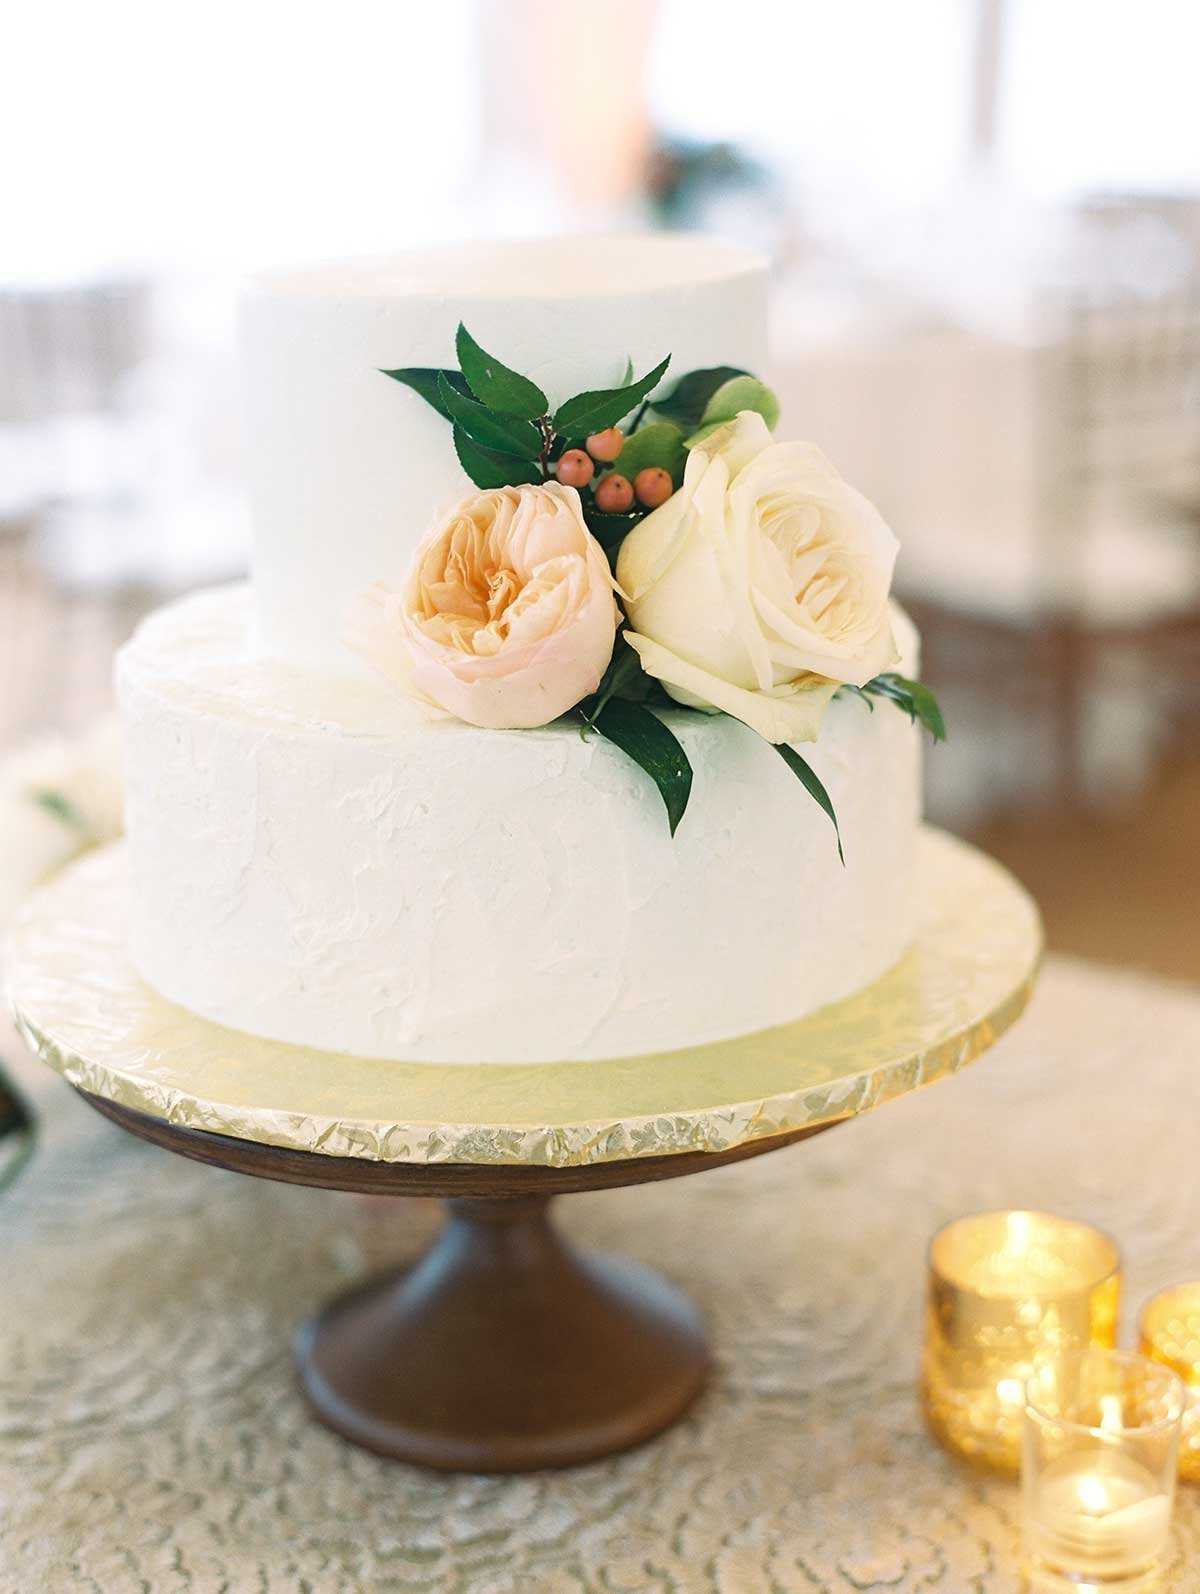 Одноярусные свадебные торты подойдут для торжества с небольшим количеством гостей Как выбрать красивый декор торта в один ярус Классические и оригинальные варианты дизайна в фотографиях